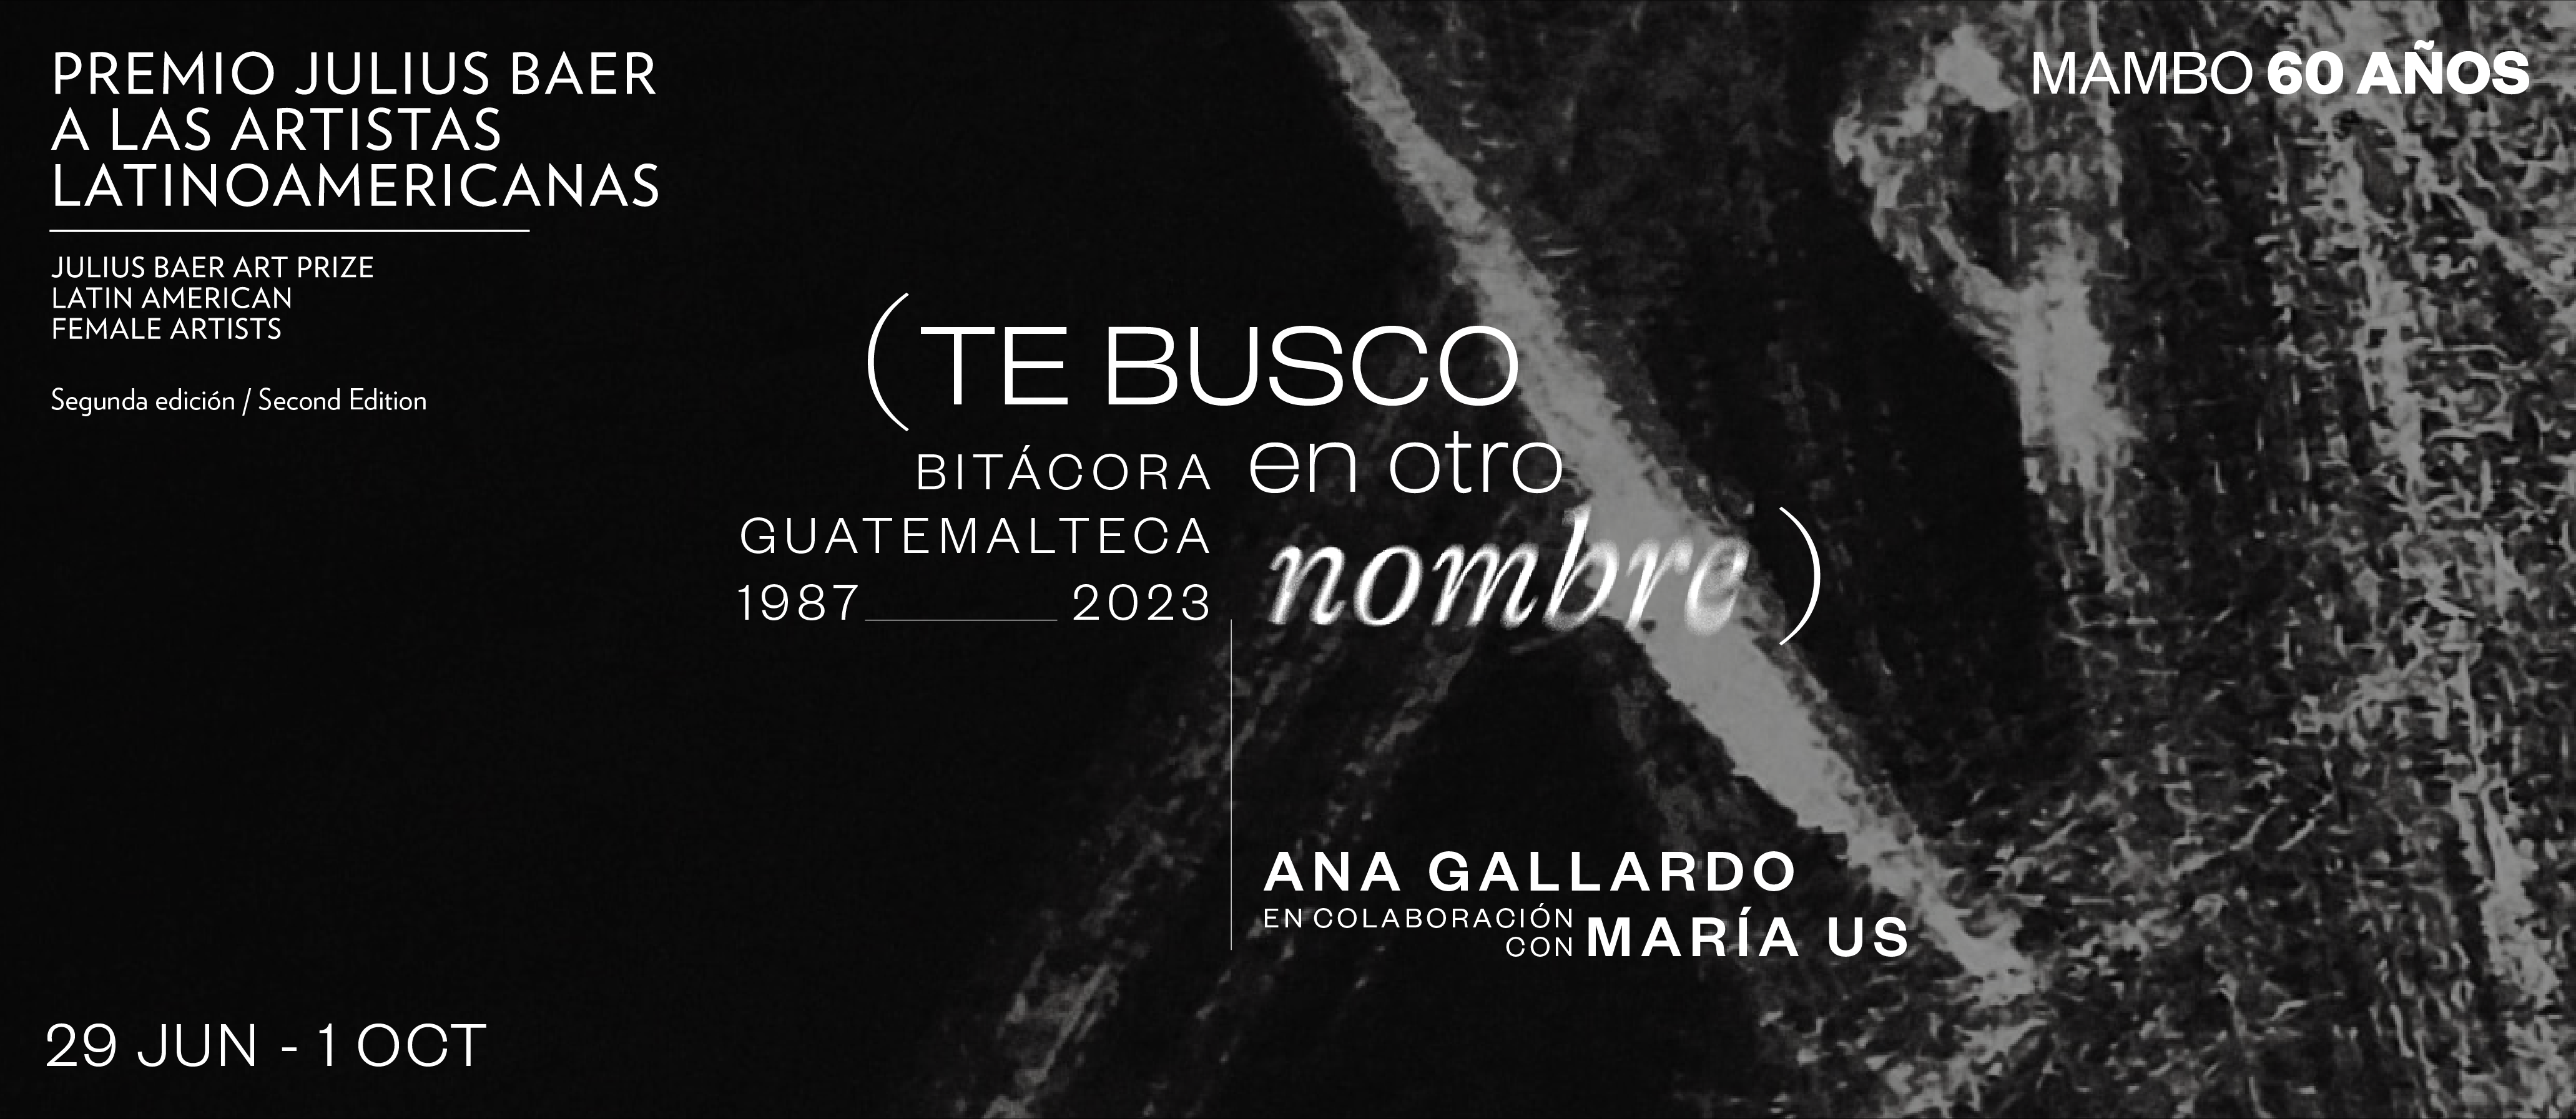 (Te busco en otro nombre). Bitácora guatemalteca 1987-2023 – Ana Gallardo en colaboración con María Us